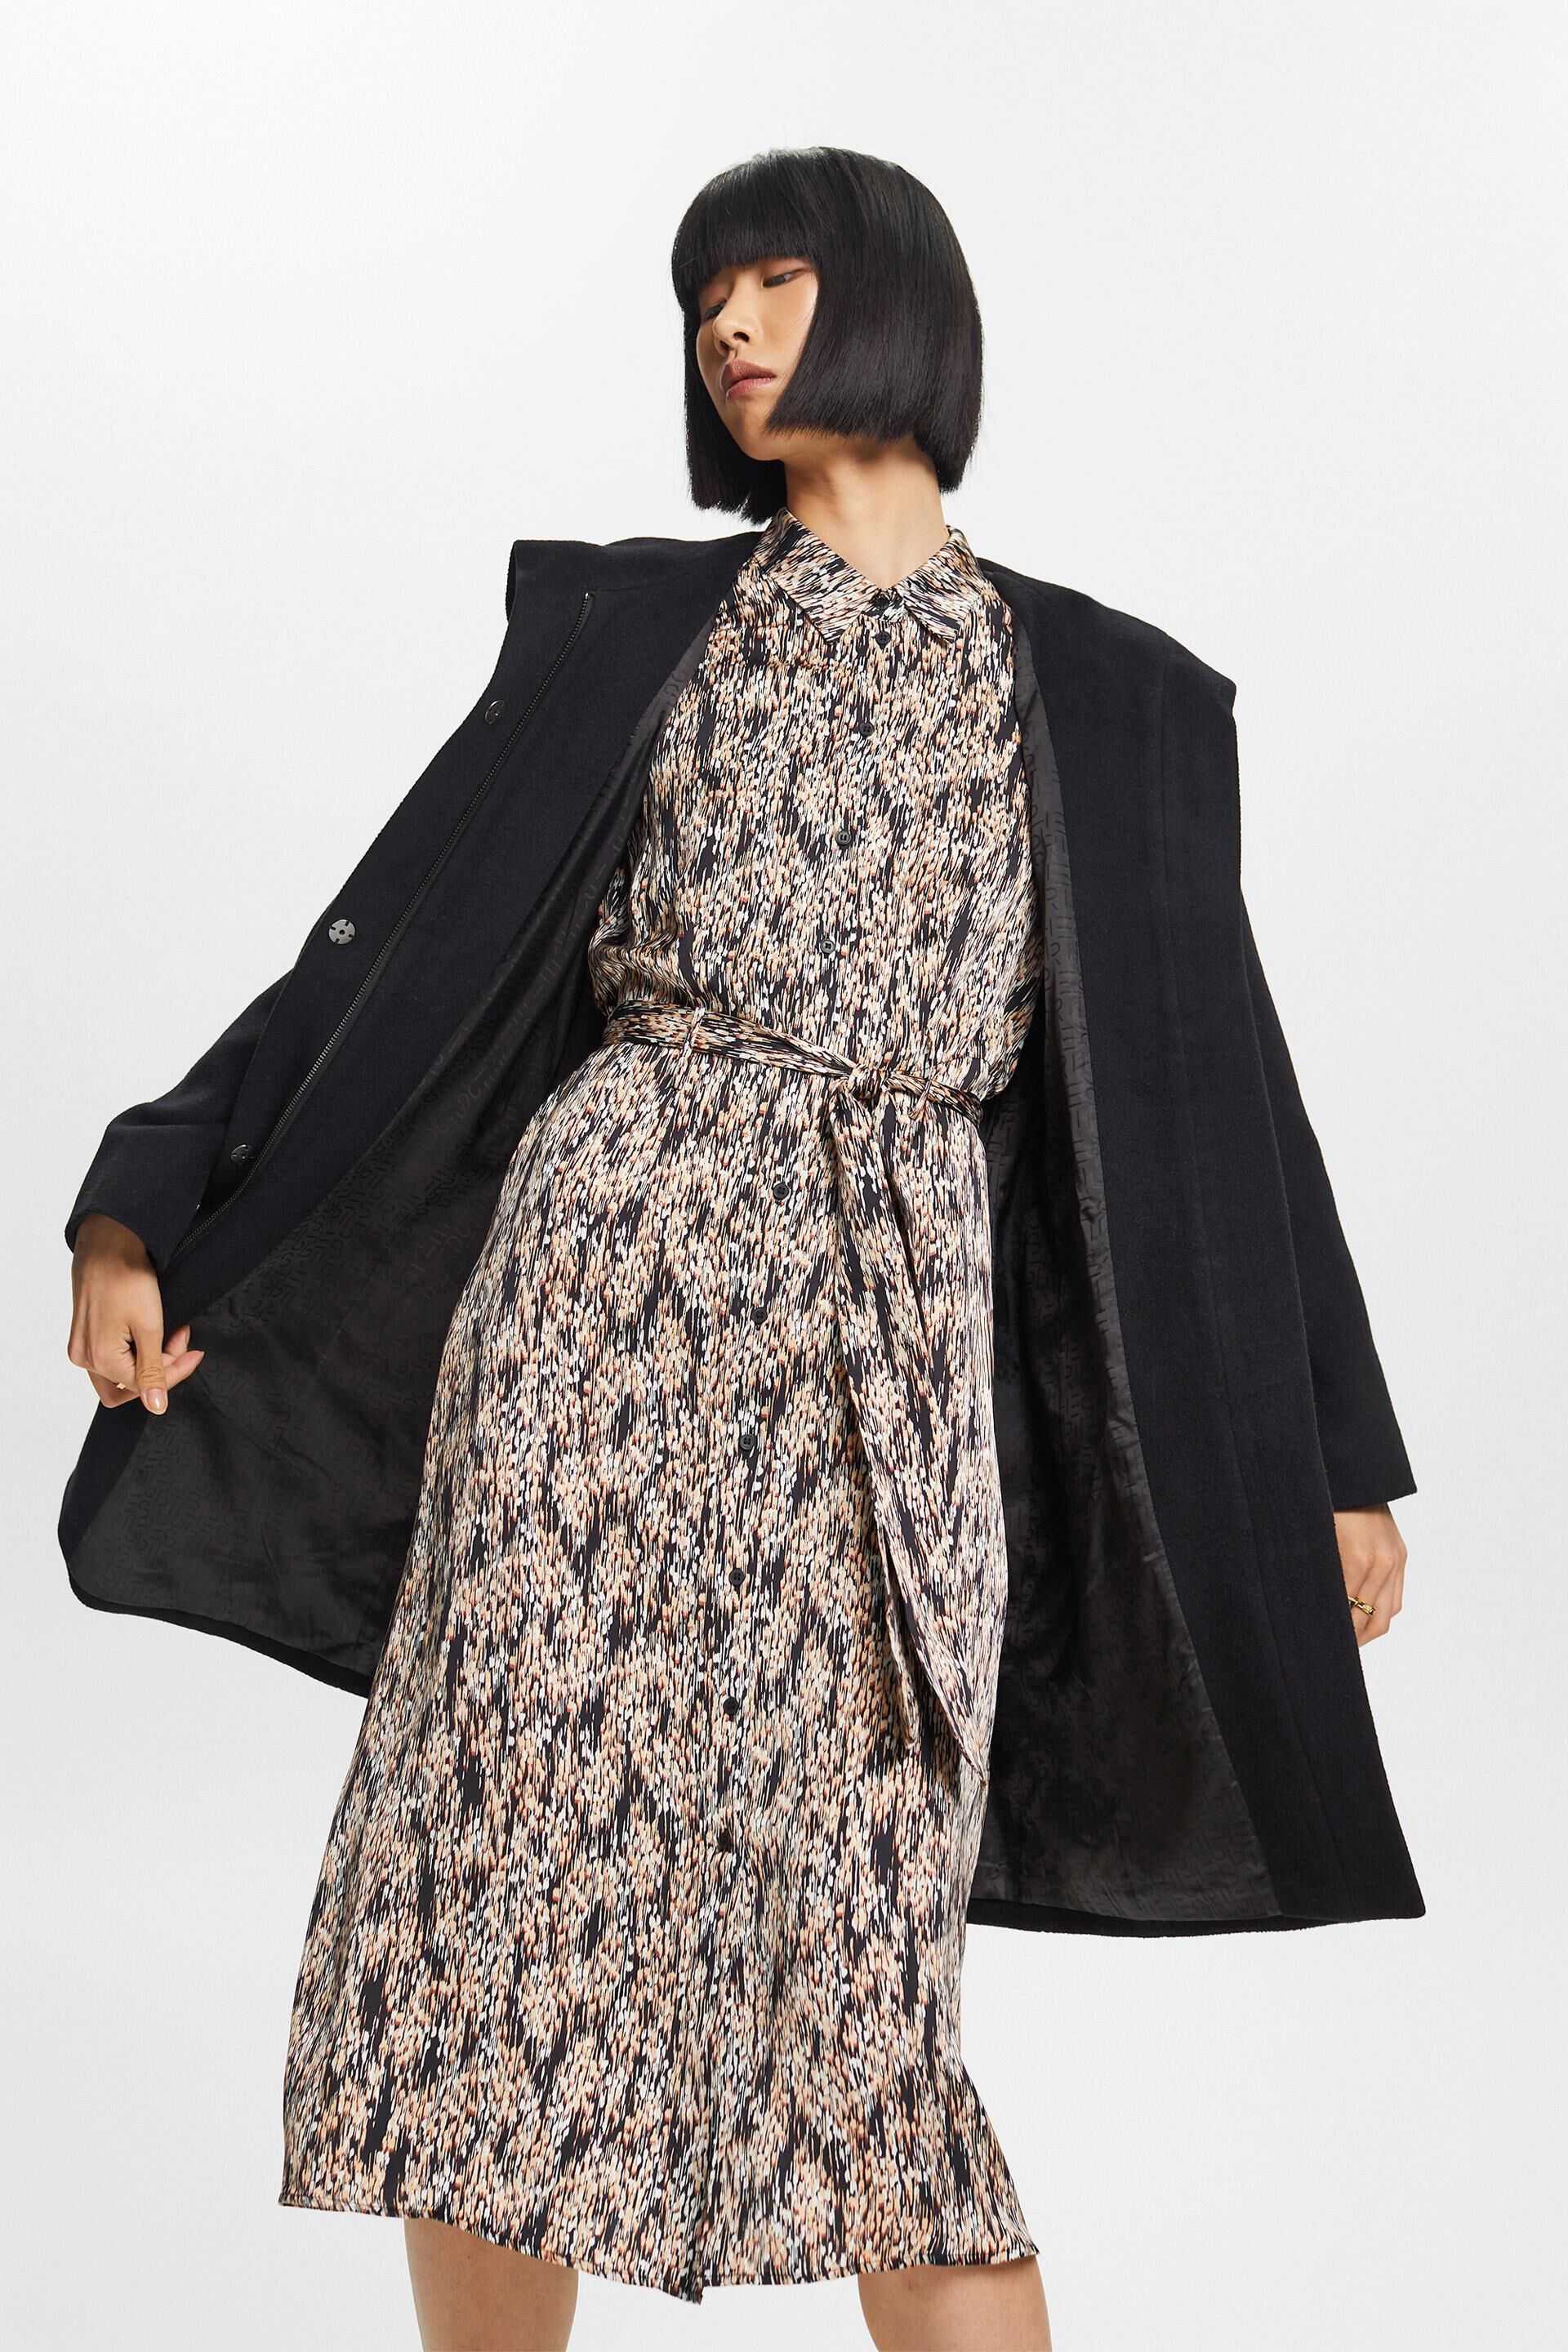 Esprit Damen Recycelt: Mantel aus Wollmischung mit Kapuze Gürtel und